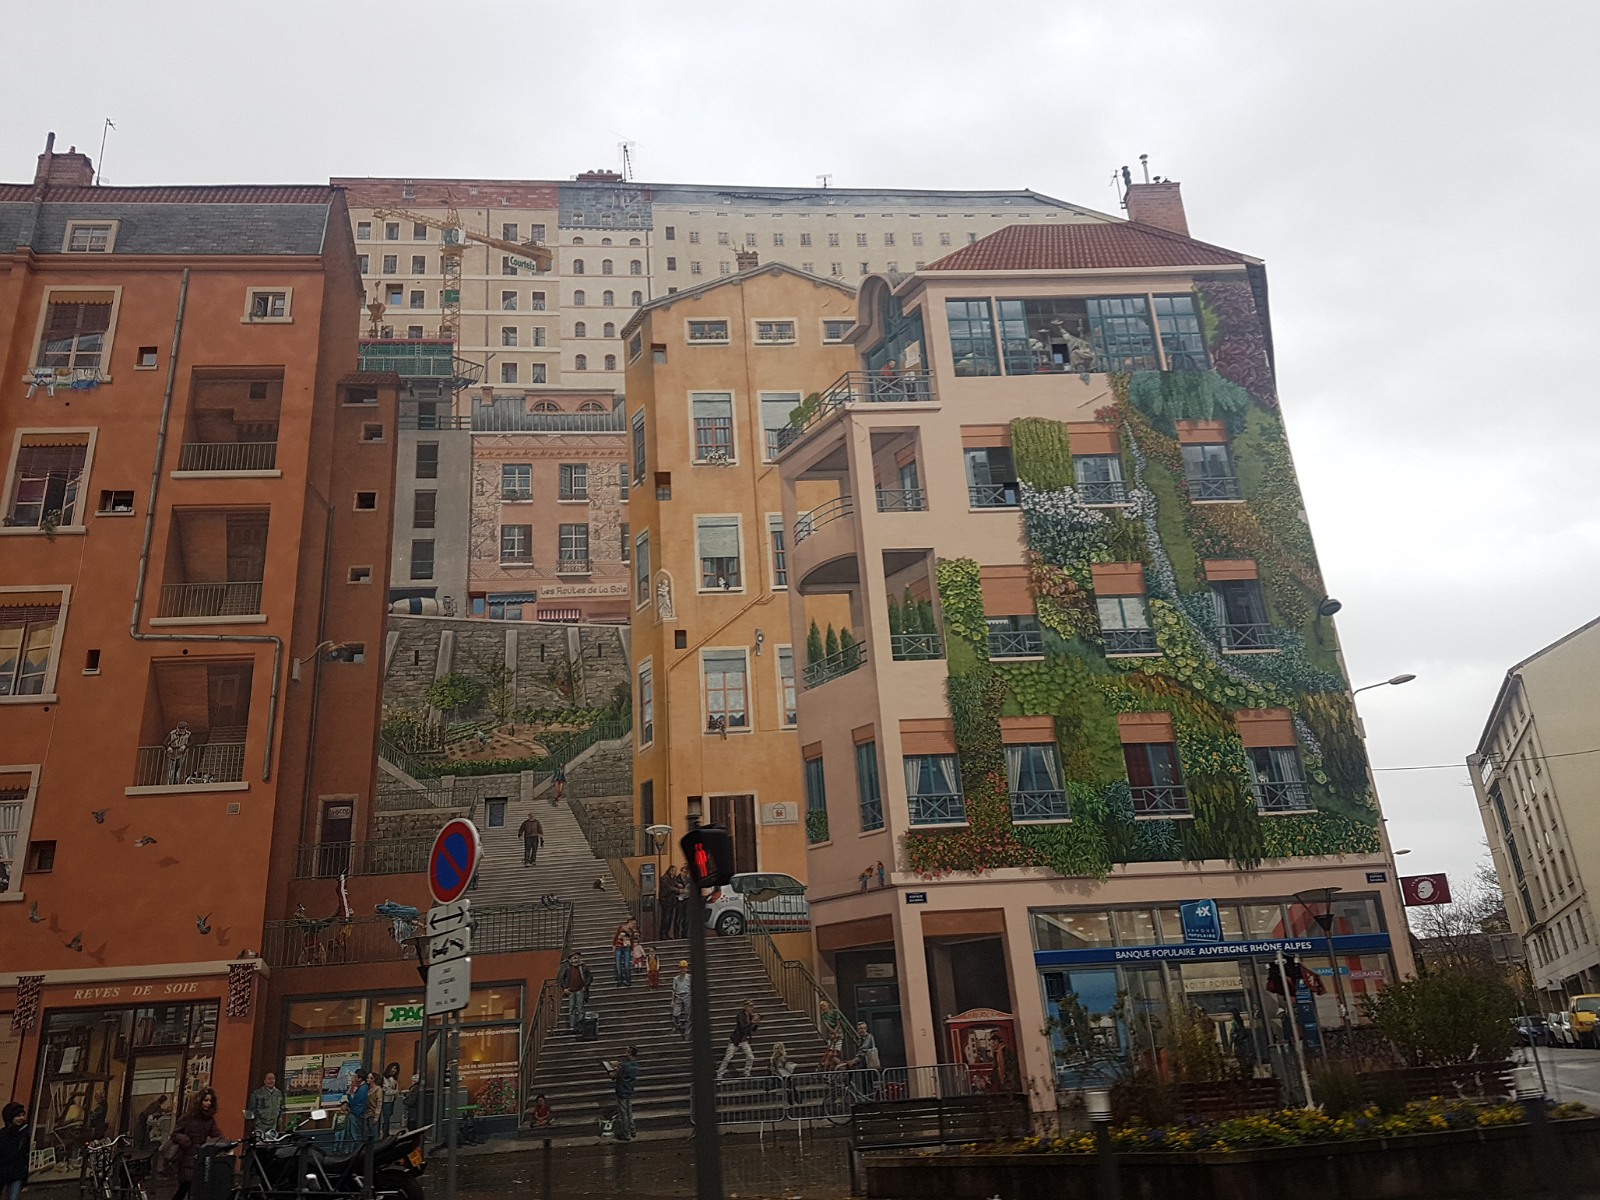 50. Zjawiskowy mural-złudzenie optyczne na ścianie budynku w Lyonie we Francji.